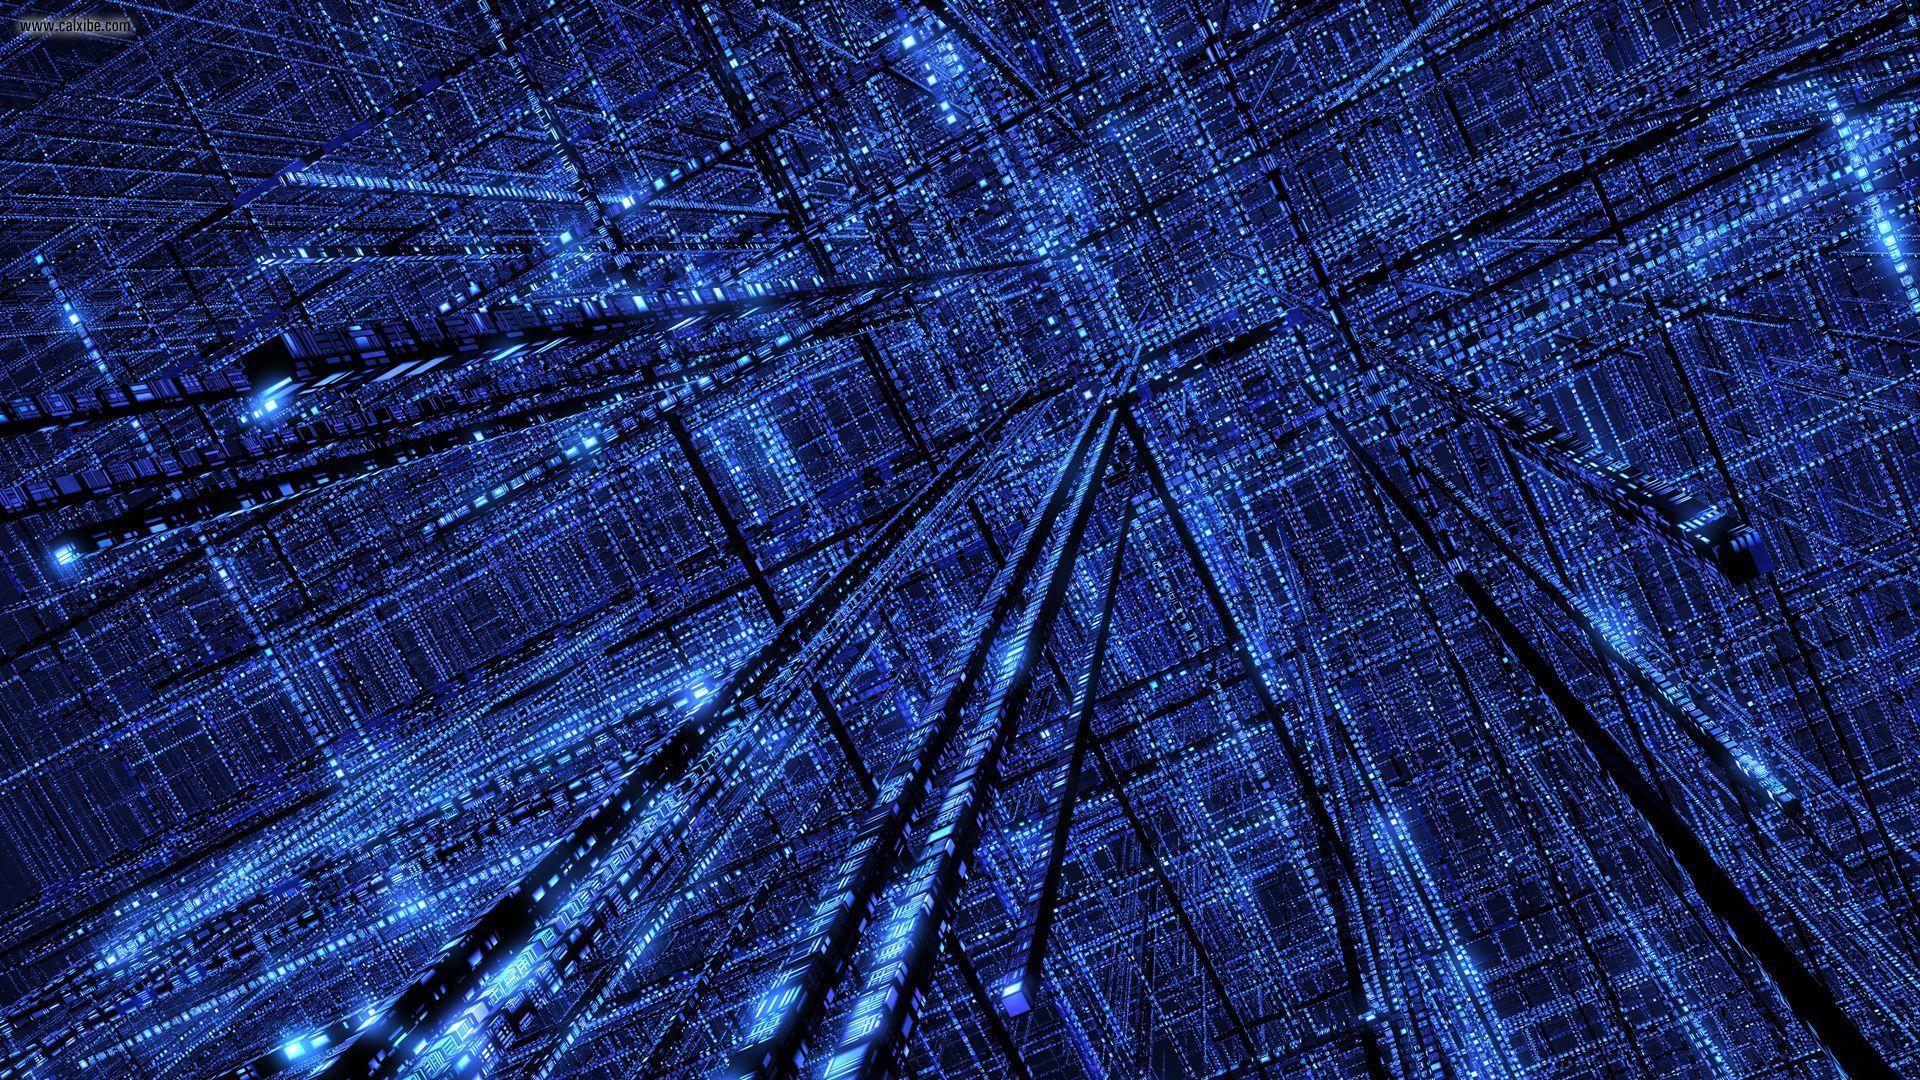 Abstract Binary Blue Digital Art Matrix Wallpaper. Background